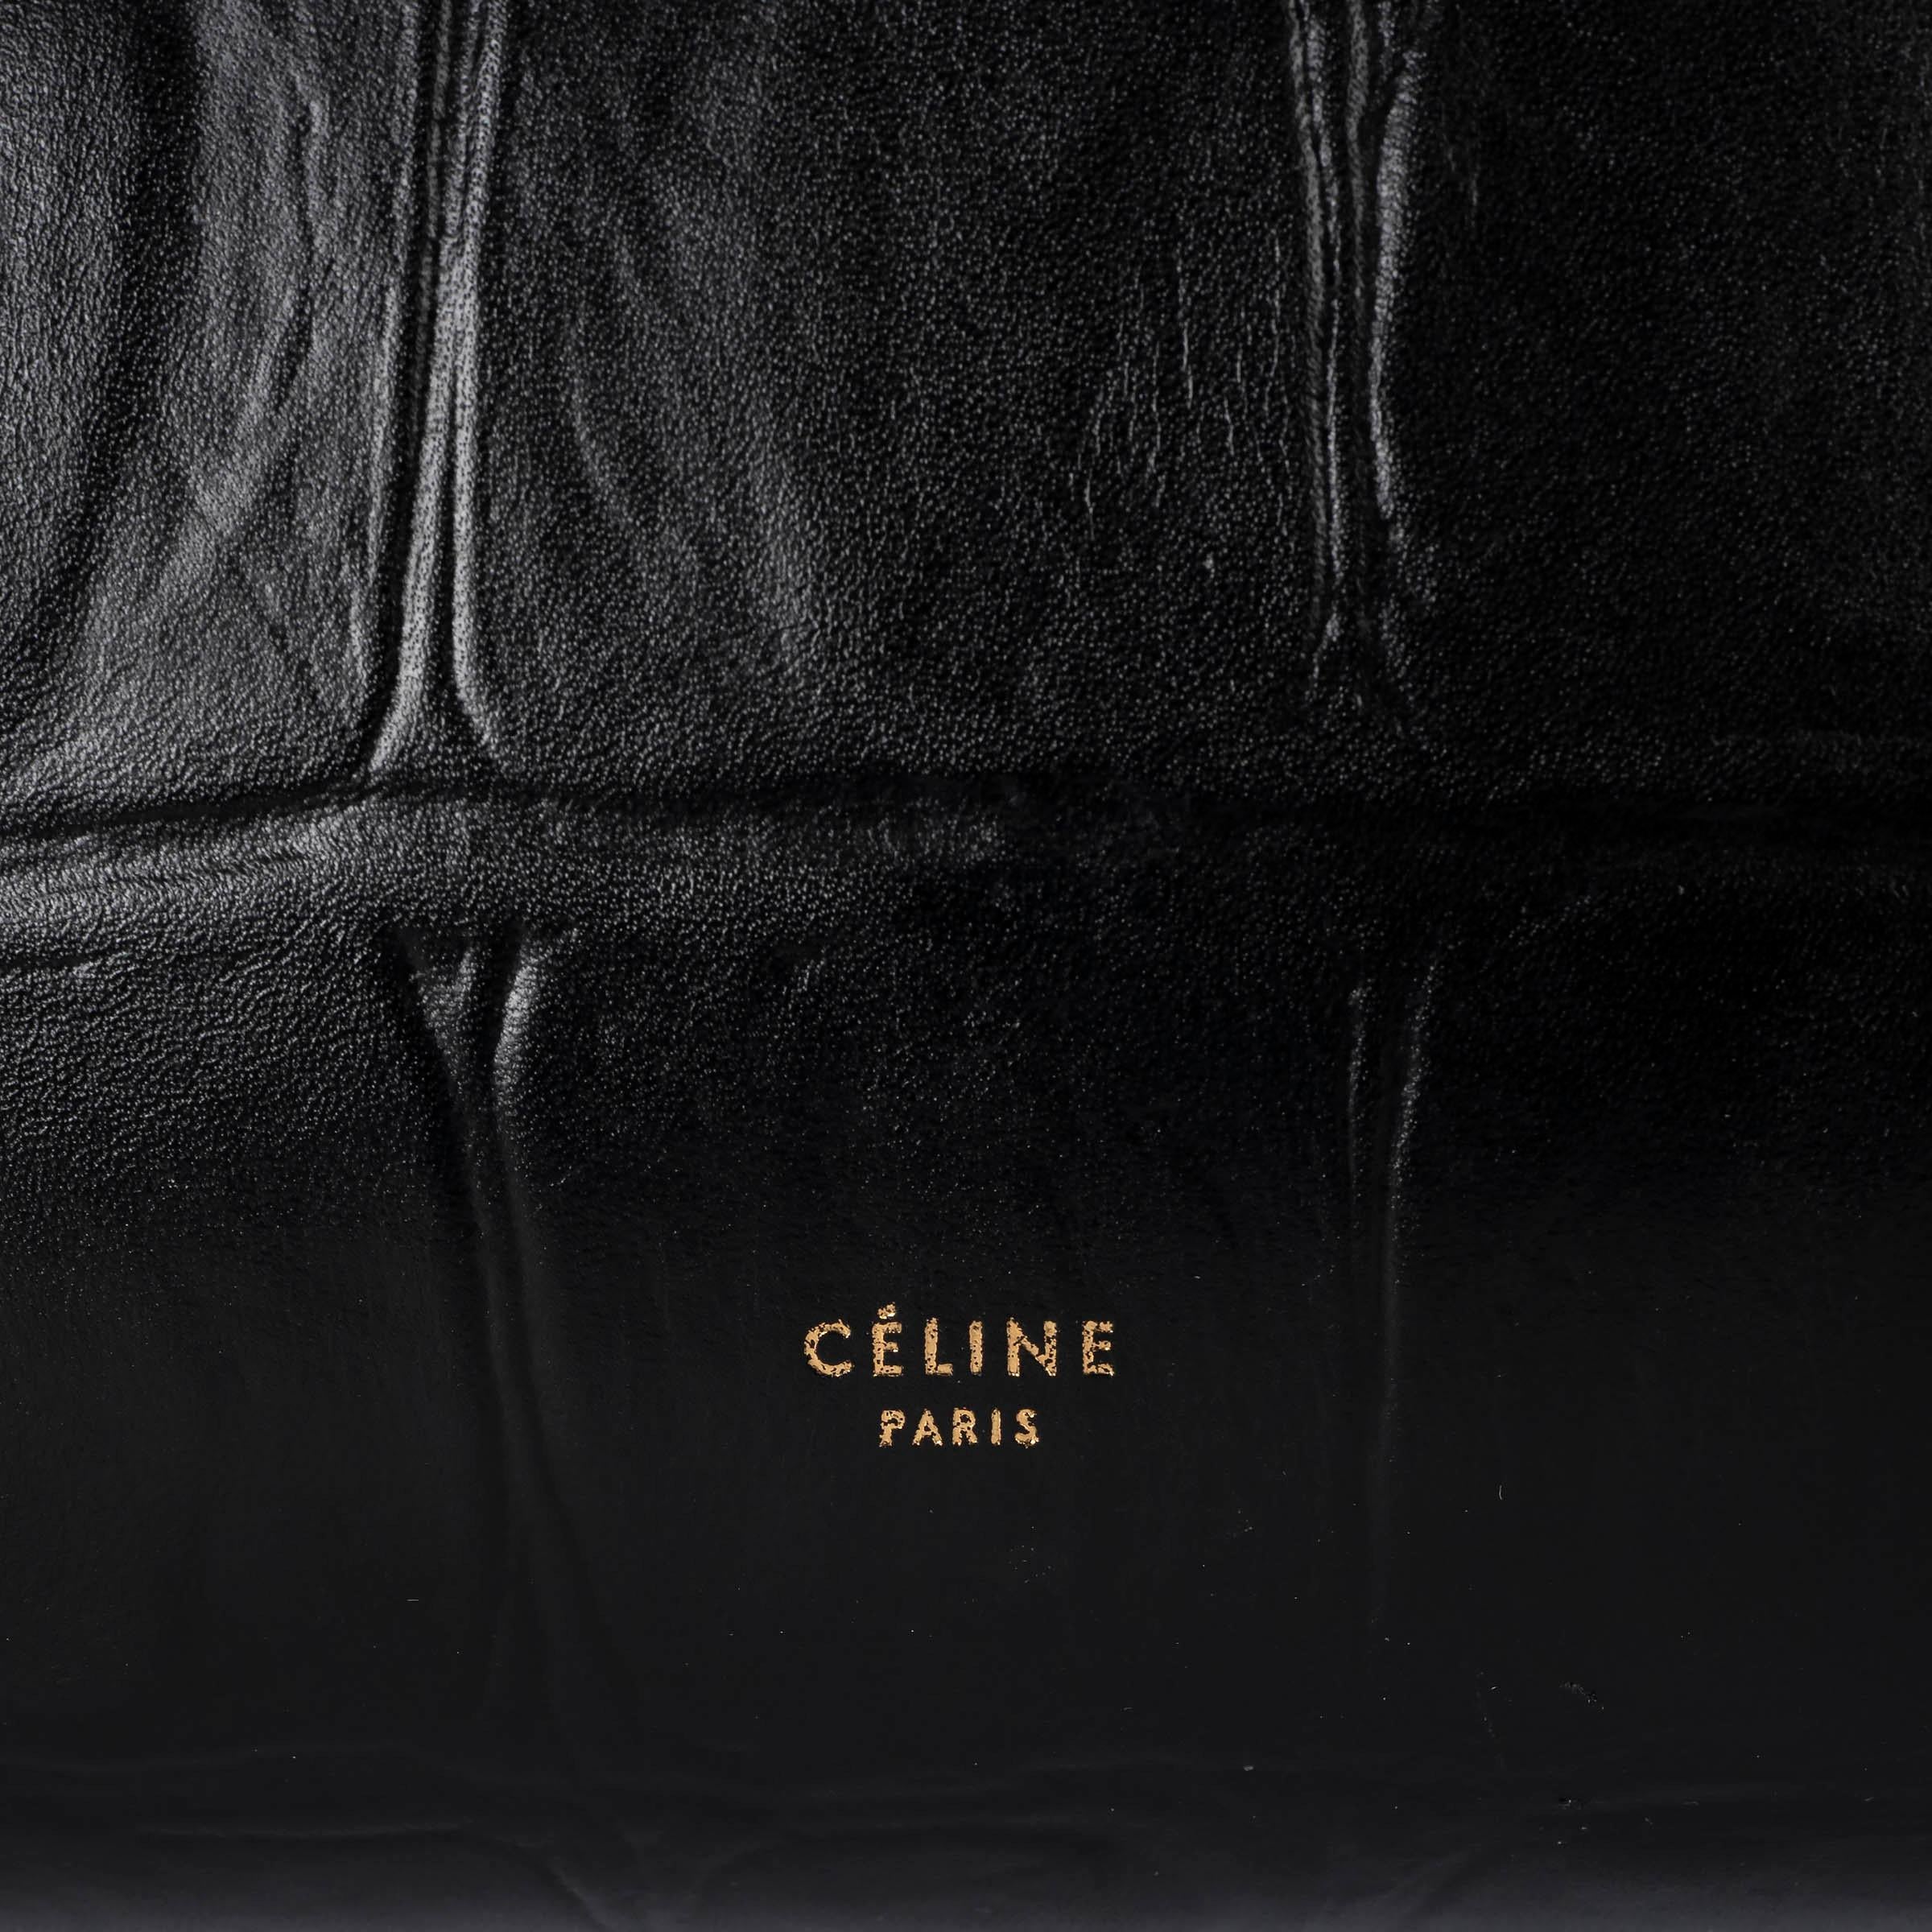 CELINE black leather 2015 CROC EMBOSSED SMALL BELT Bag For Sale 2